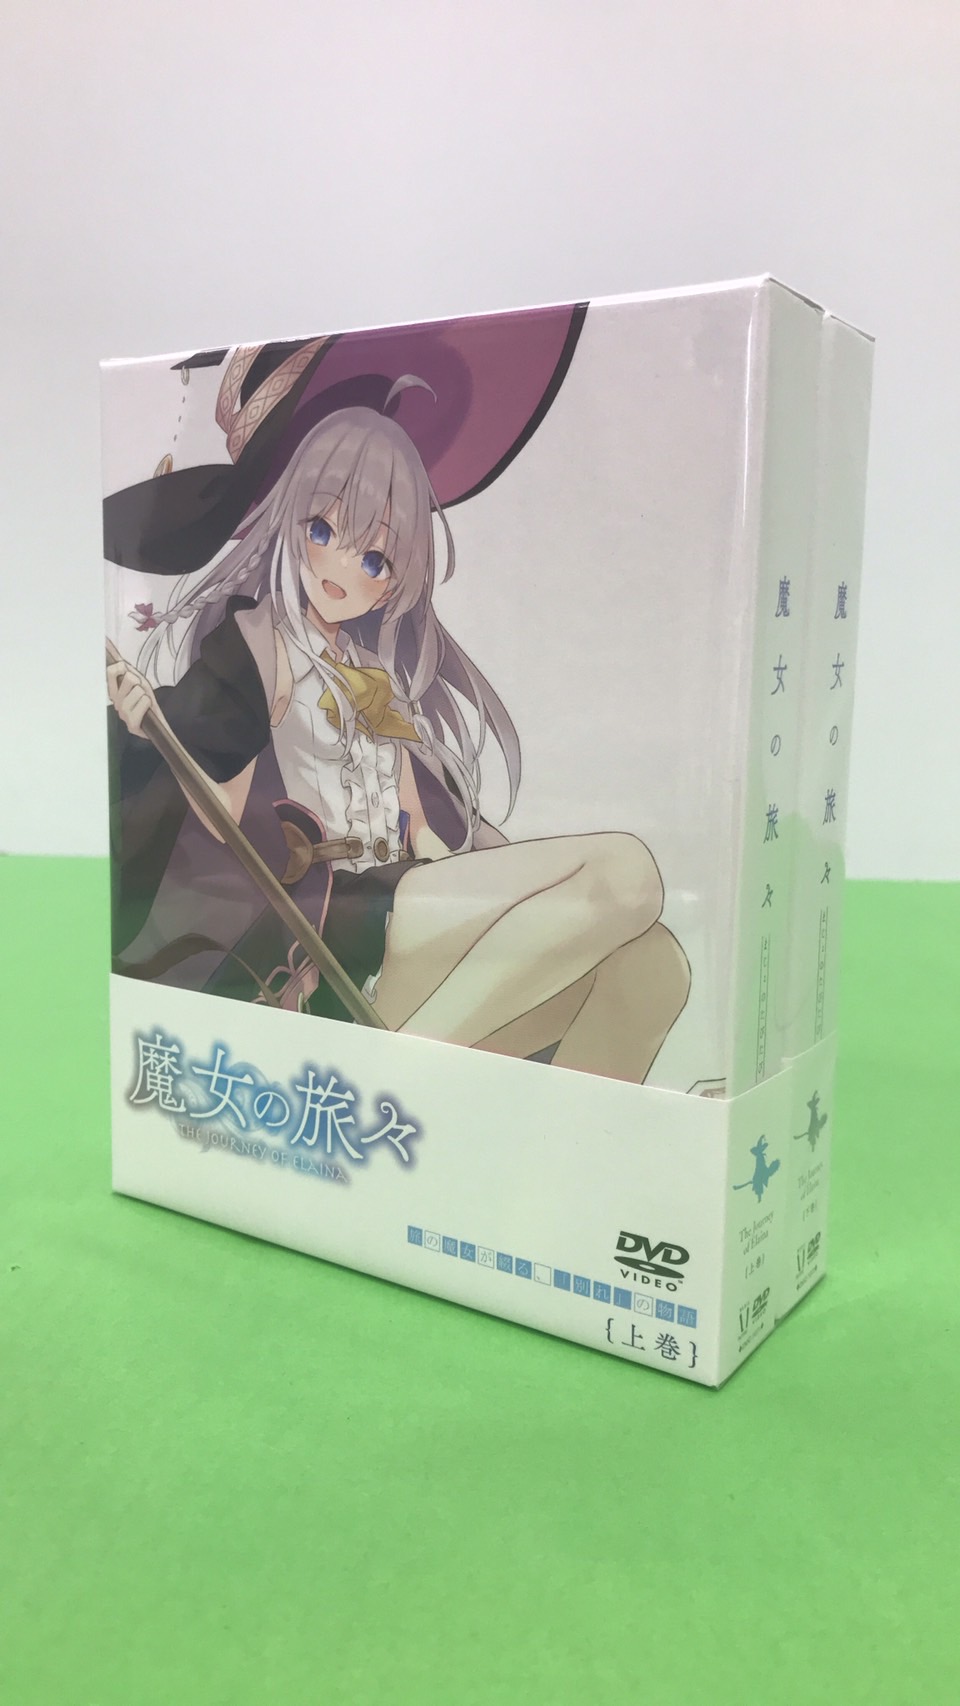 魔女の旅々 blu-ray 上下巻セット 美品 - DVD/ブルーレイ